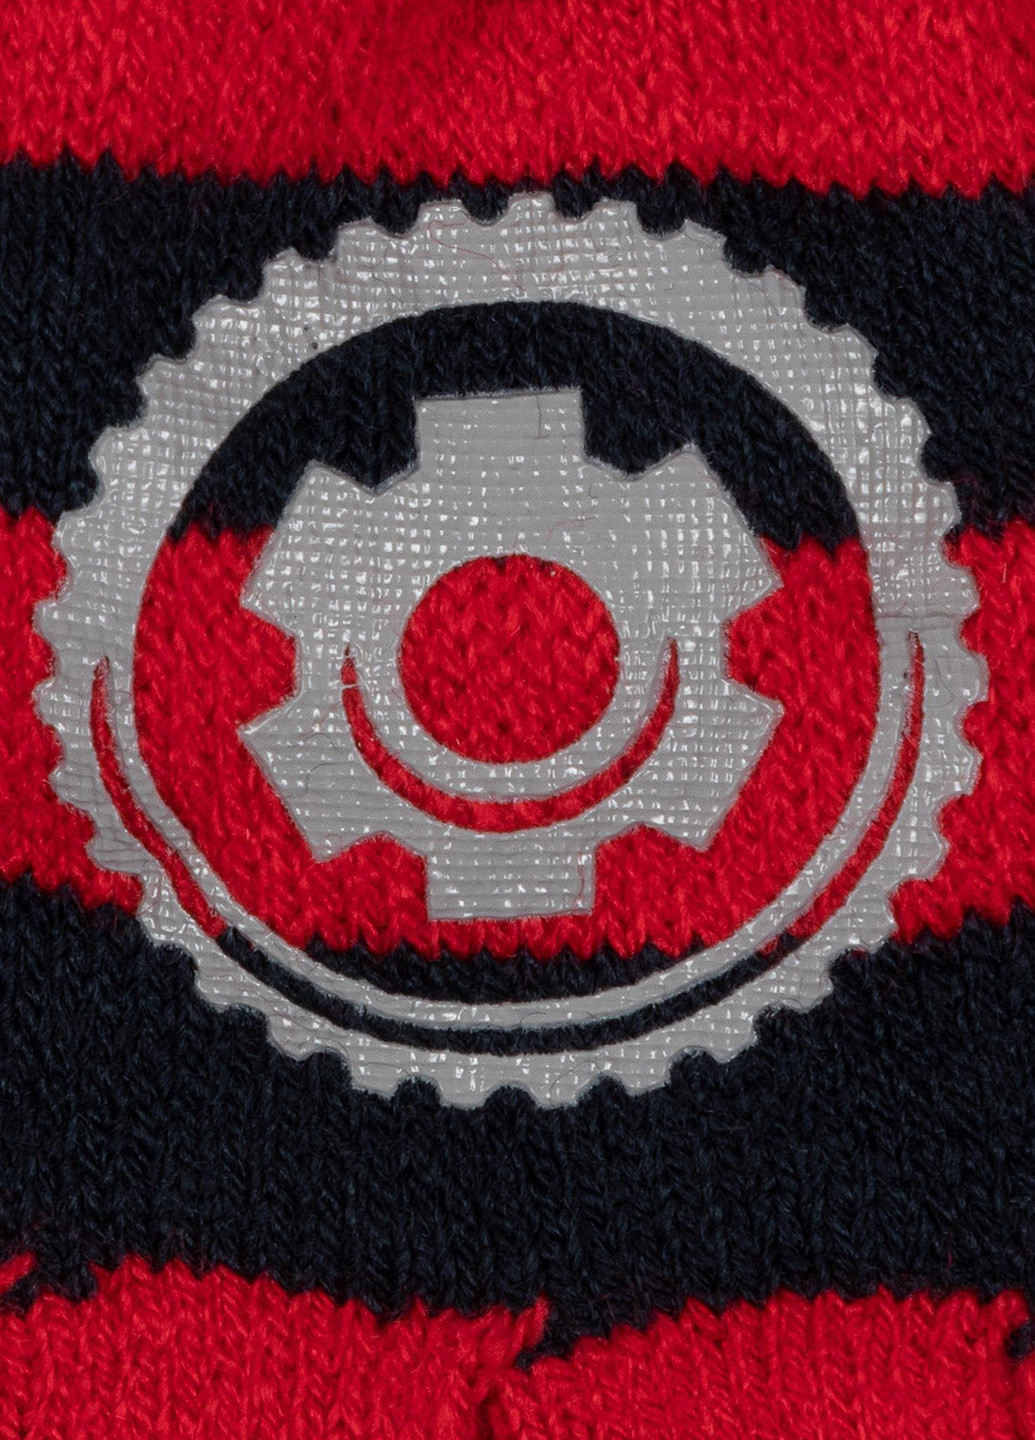 Комплект дитячий ACCCS-AW19-02D Cars шапка + шарф + перчатки рисунки красные кэжуалы акрил